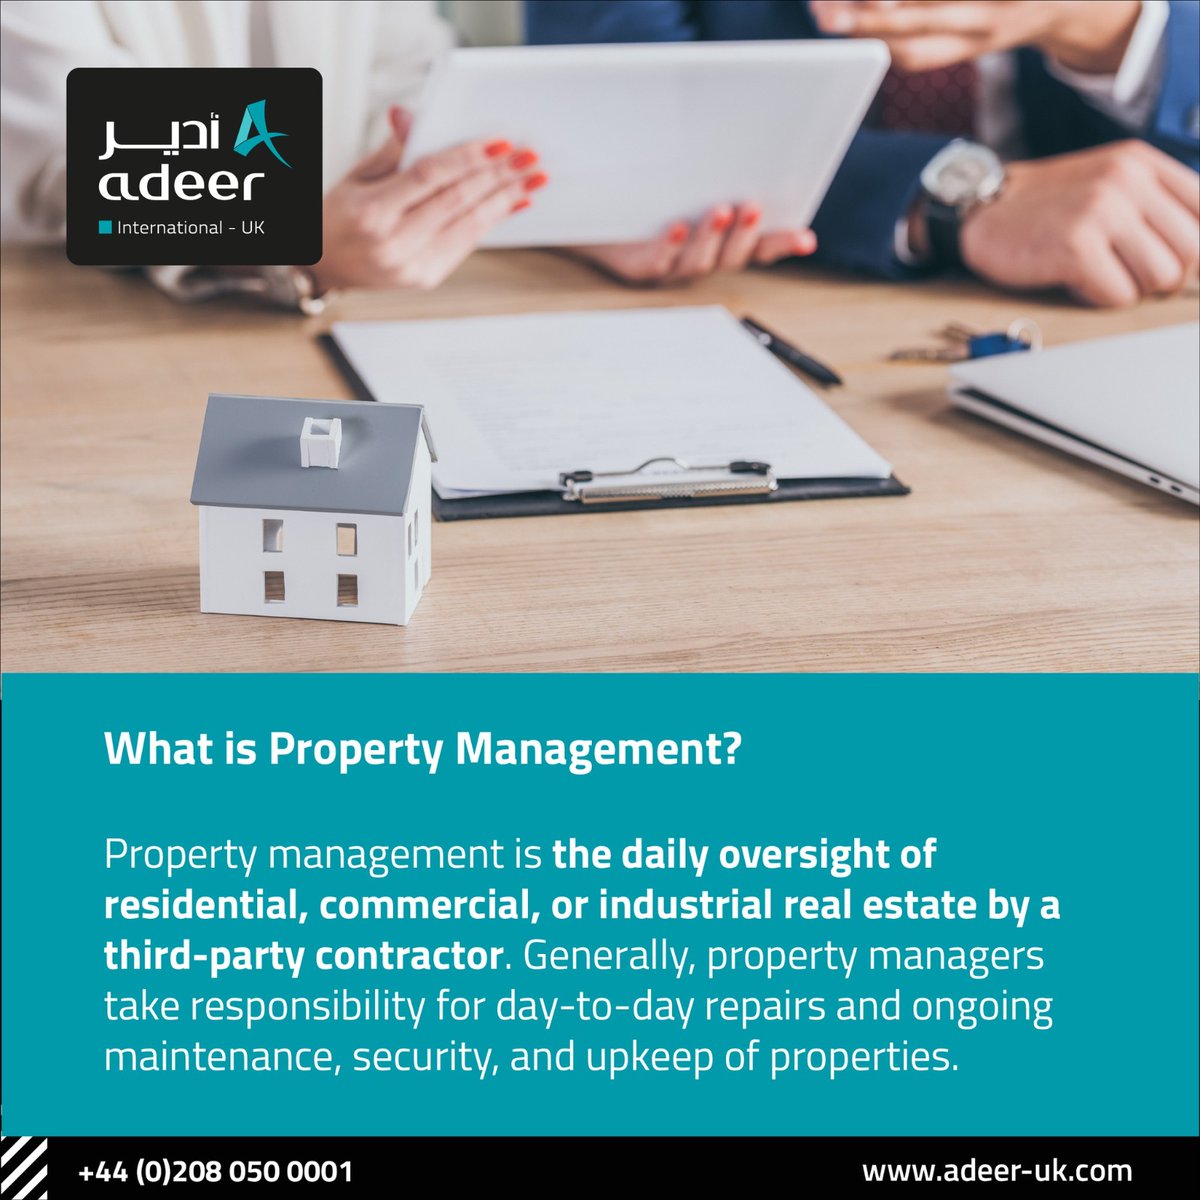 What is Property Management?

#Realestate #Realestateuk #Property #Propertymanagement #Propertyuk #Saudi #London #Unitedkingdom #UK